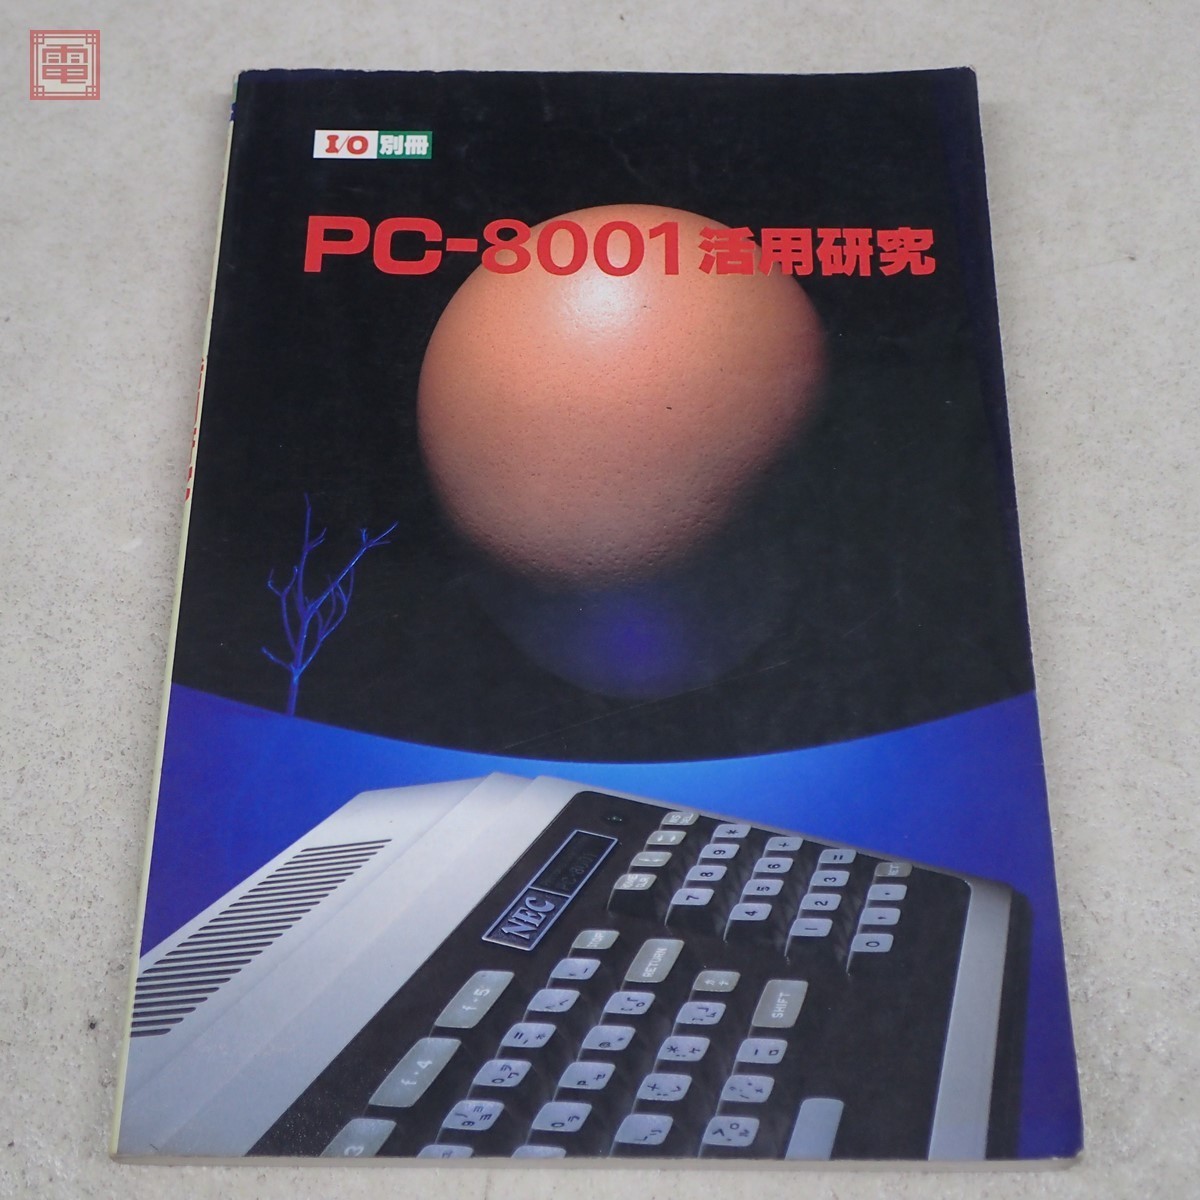 雑誌 I/O別冊 PC-8001活用研究 工学社 PP(パソコン一般)｜売買された 